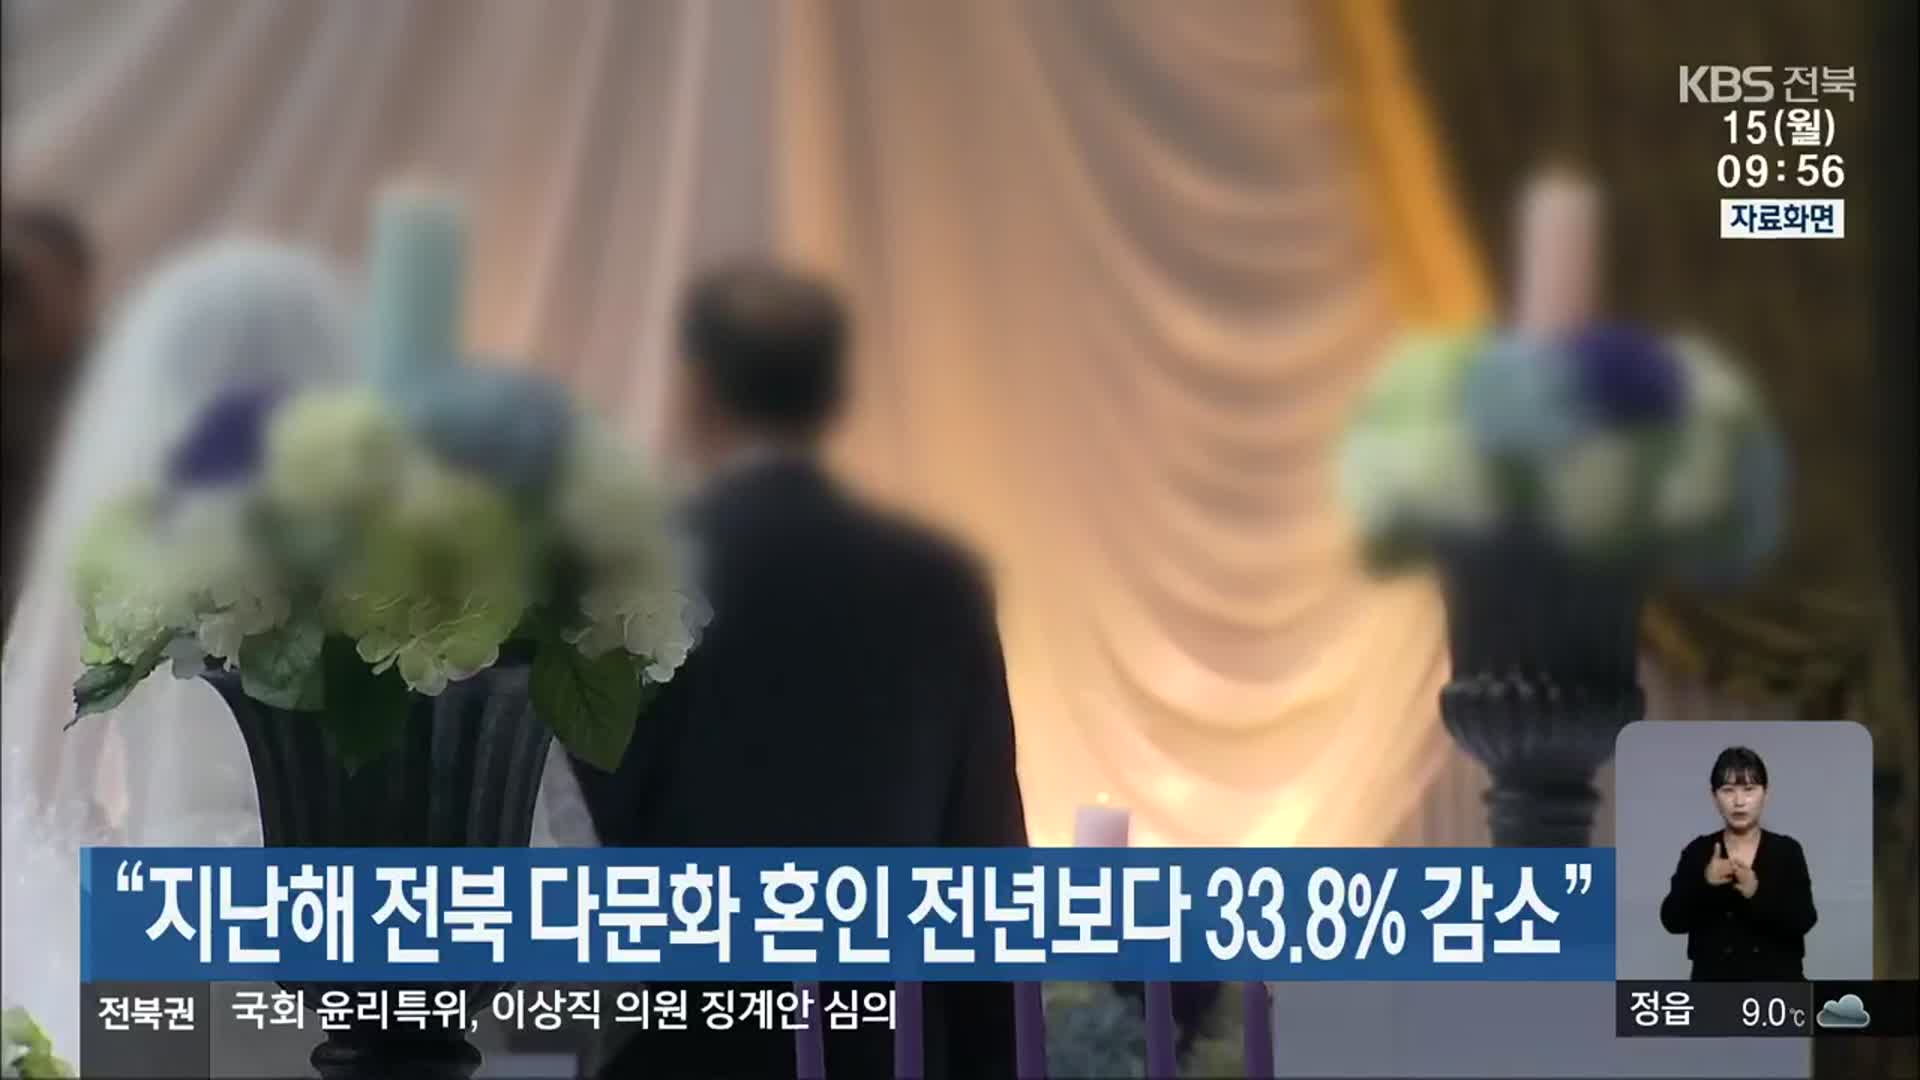 “지난해 전북 다문화 혼인 전년보다 33.8% 감소”